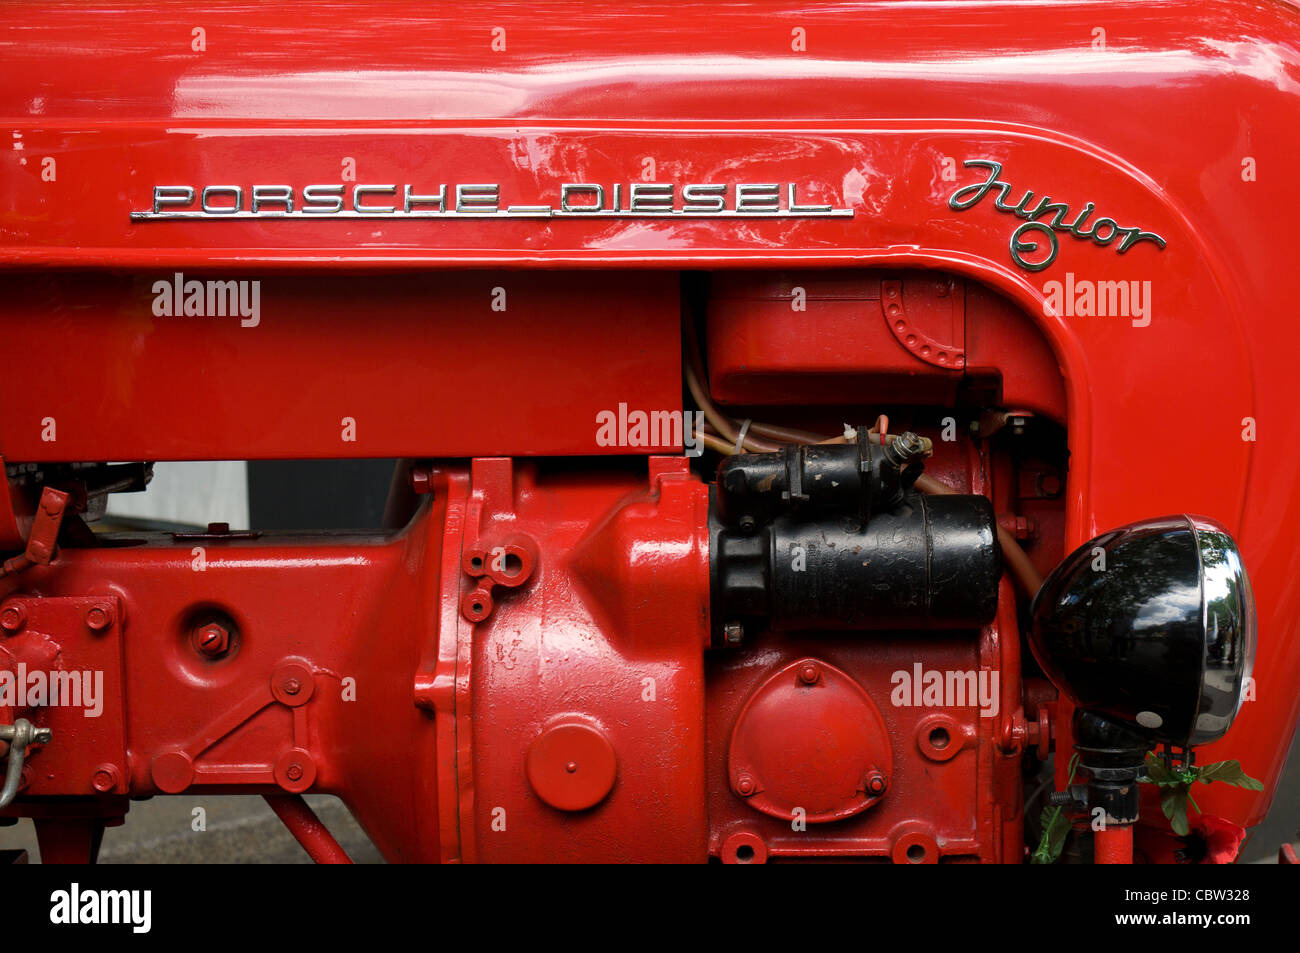 tractor-engine-porsche-junior-CBW328.jpg